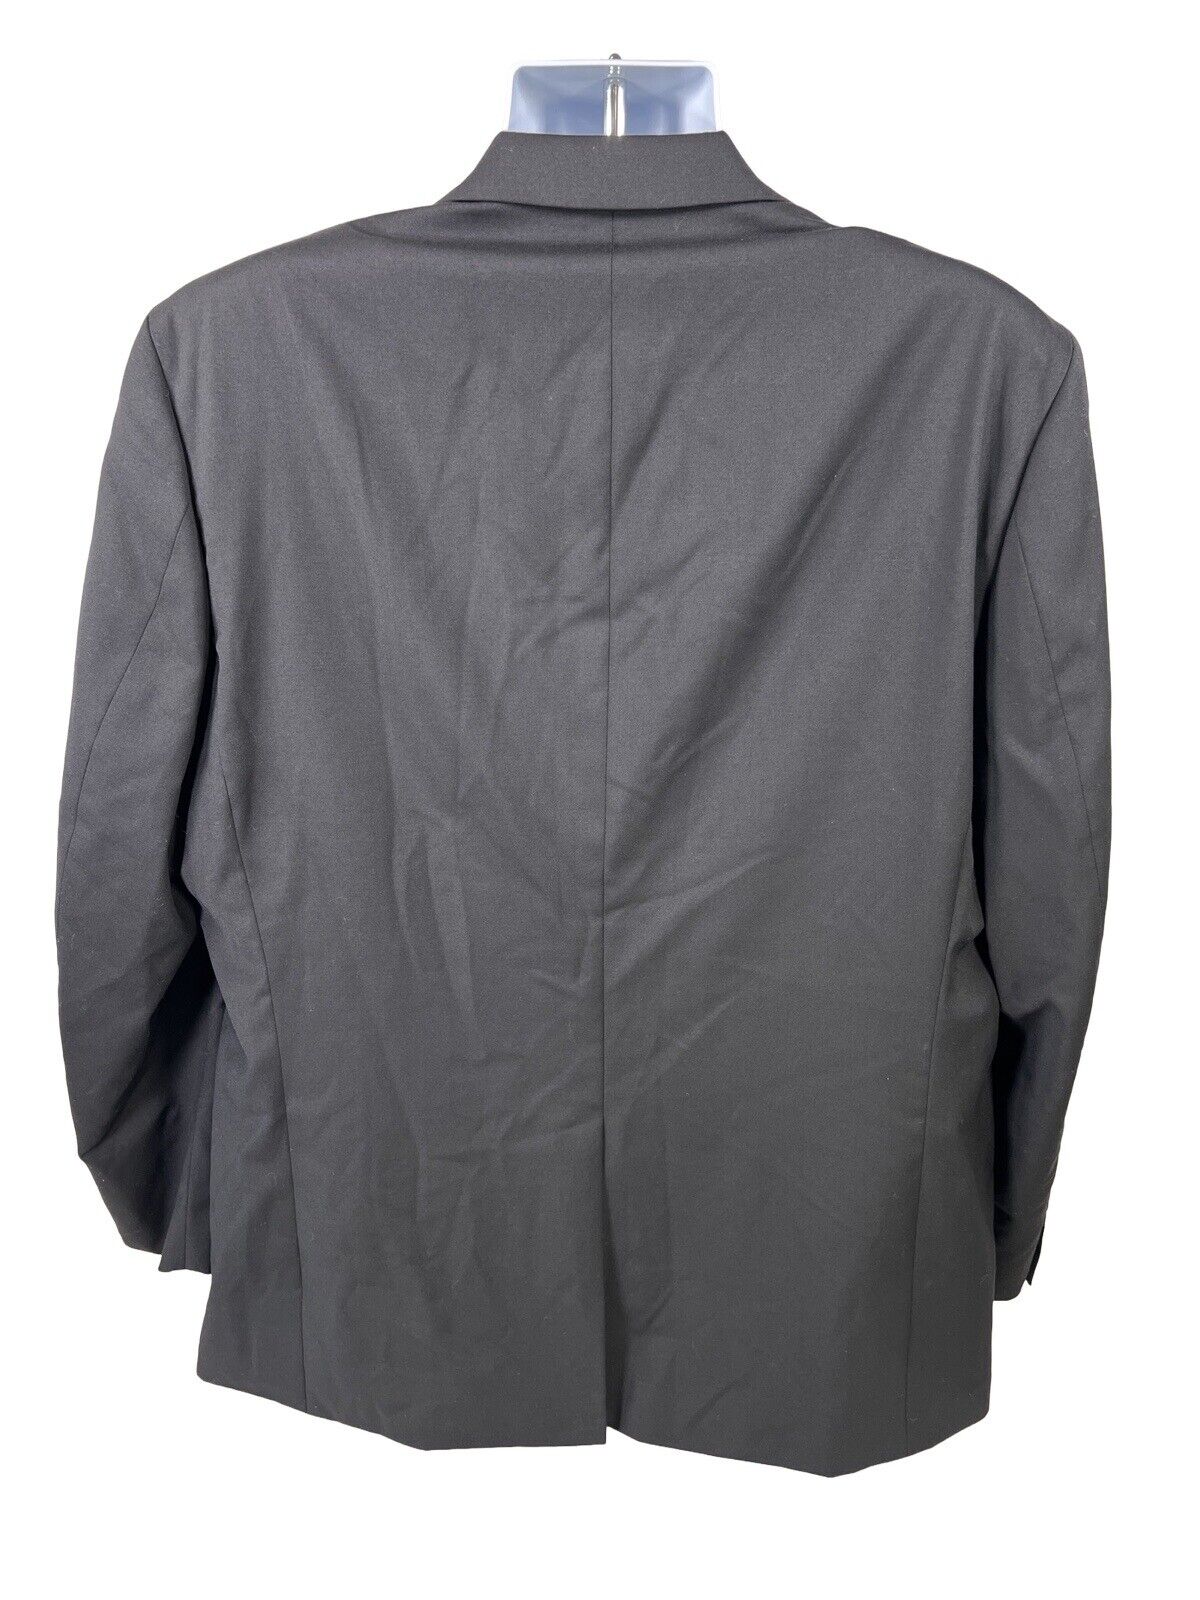 LAUREN Ralph Lauren Men's Black 2-Button Wool Suit Jacket Blazer - 46R